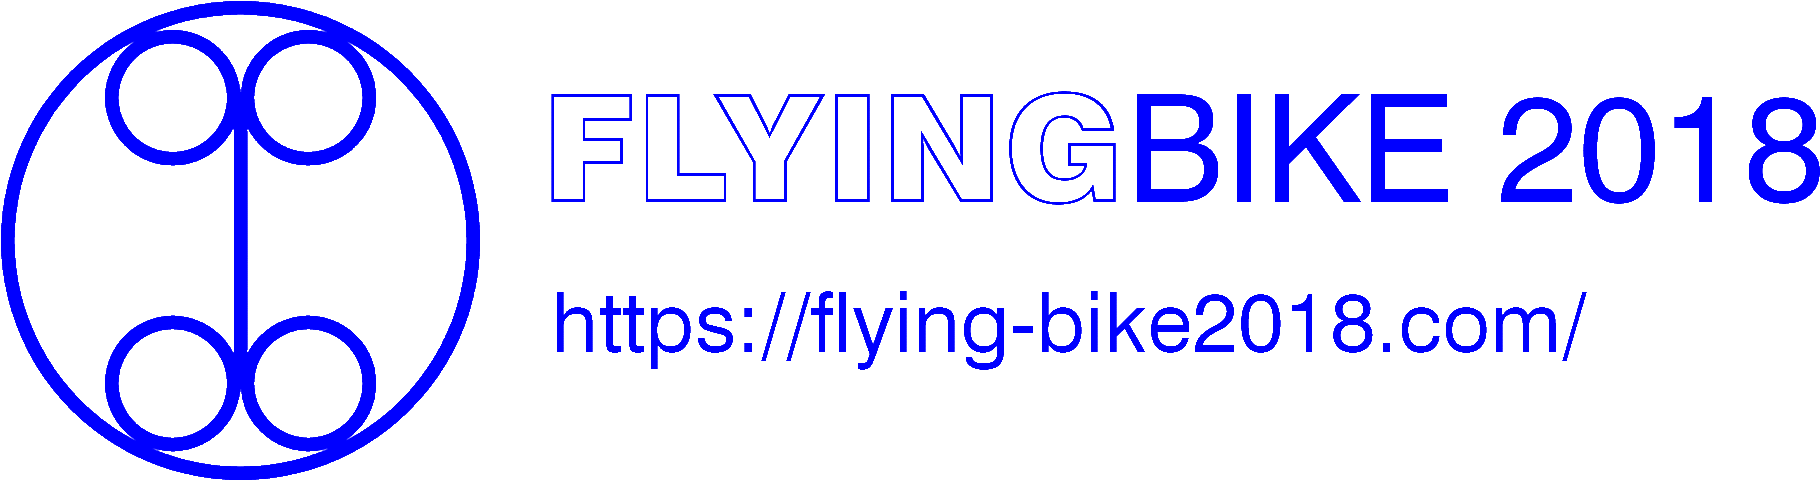 FlyingBike